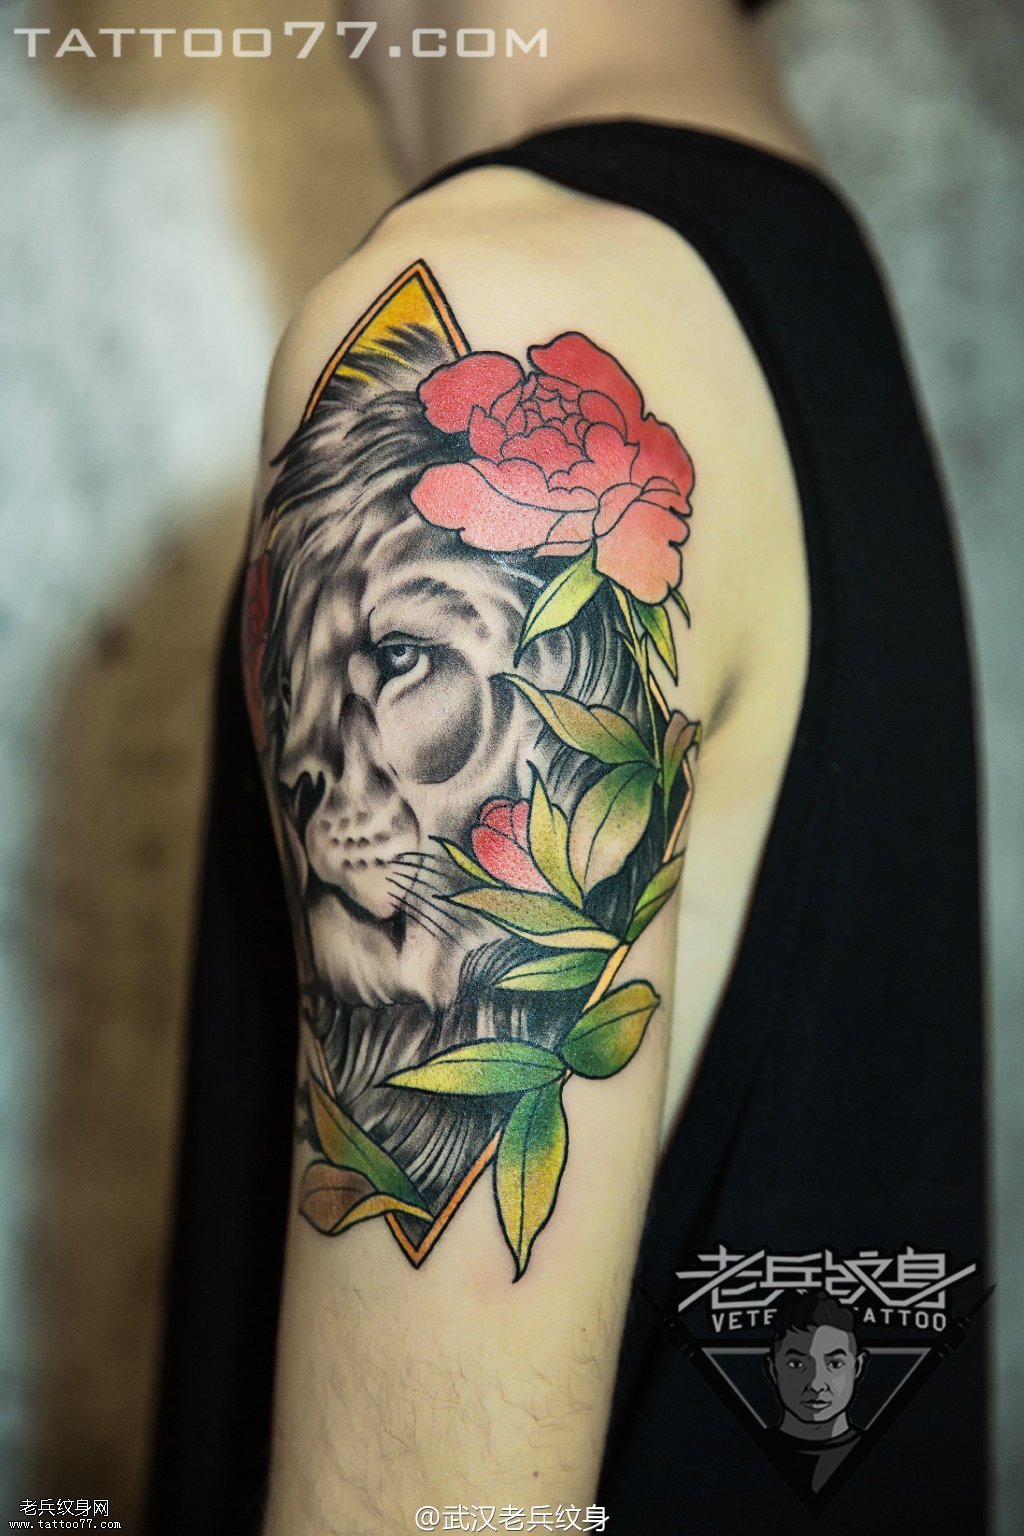  帅气的大臂狮子玫瑰花纹身图案作品